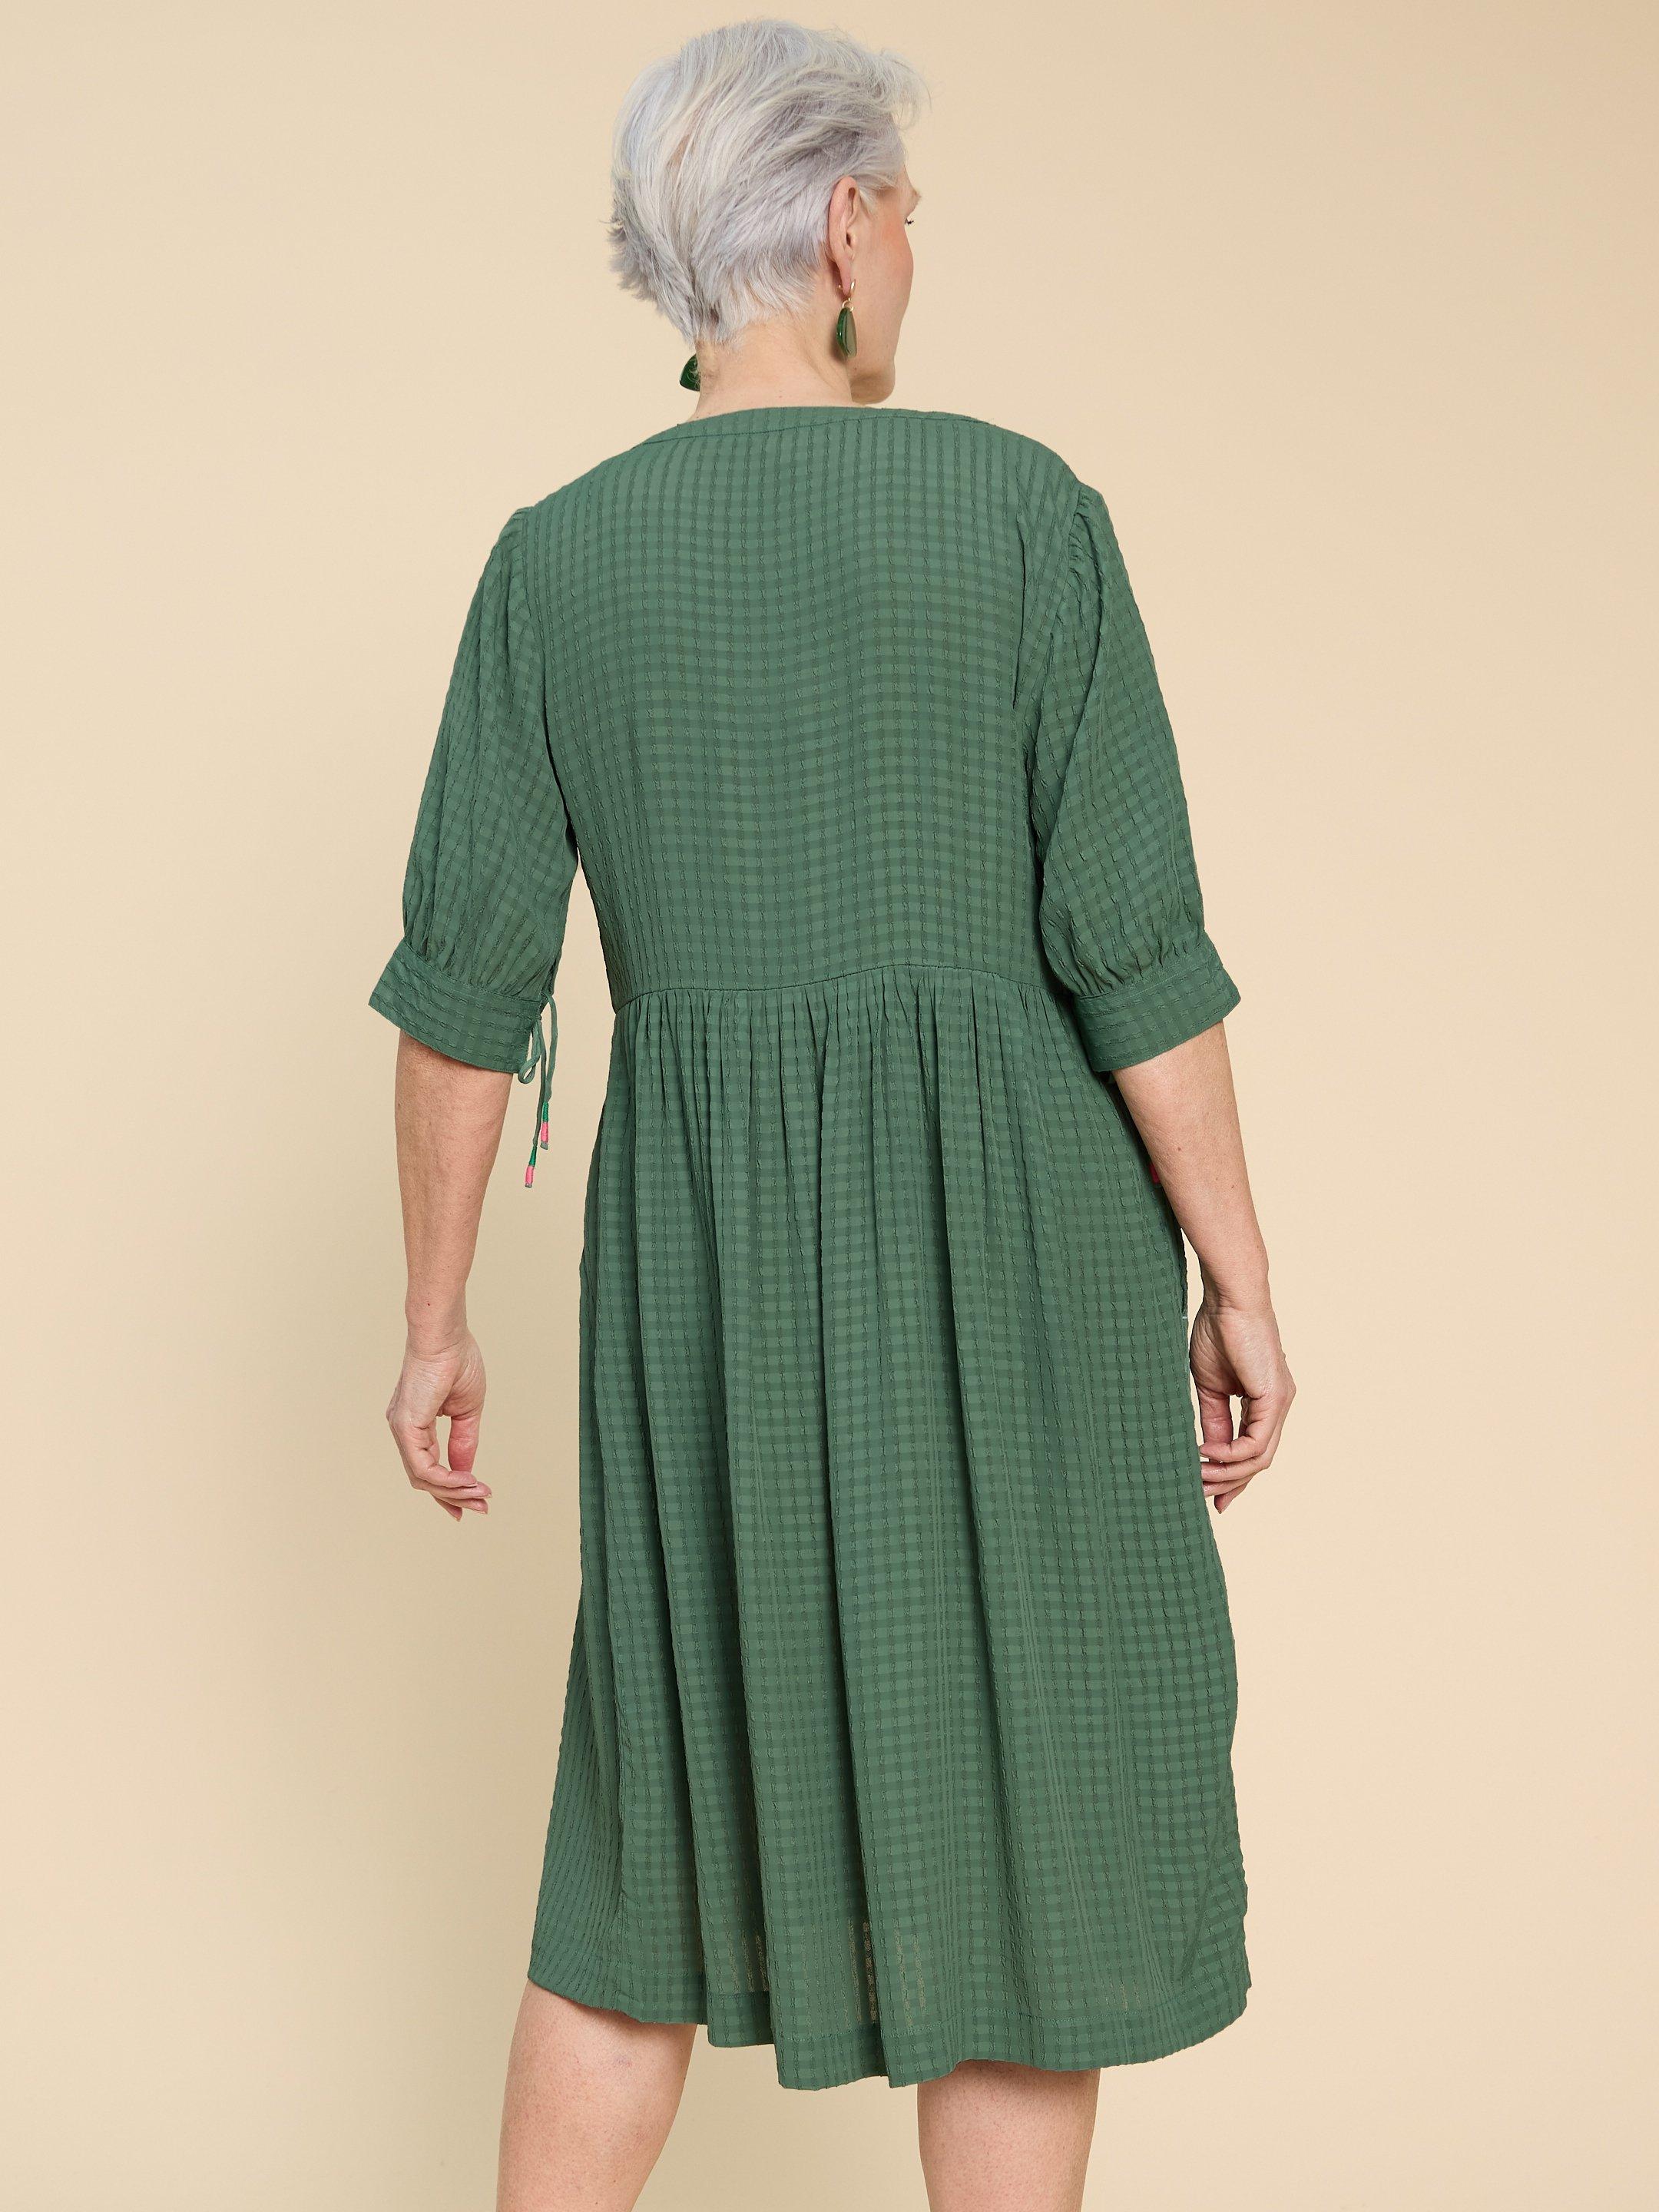 Amelia Dress in MID GREEN - MODEL BACK